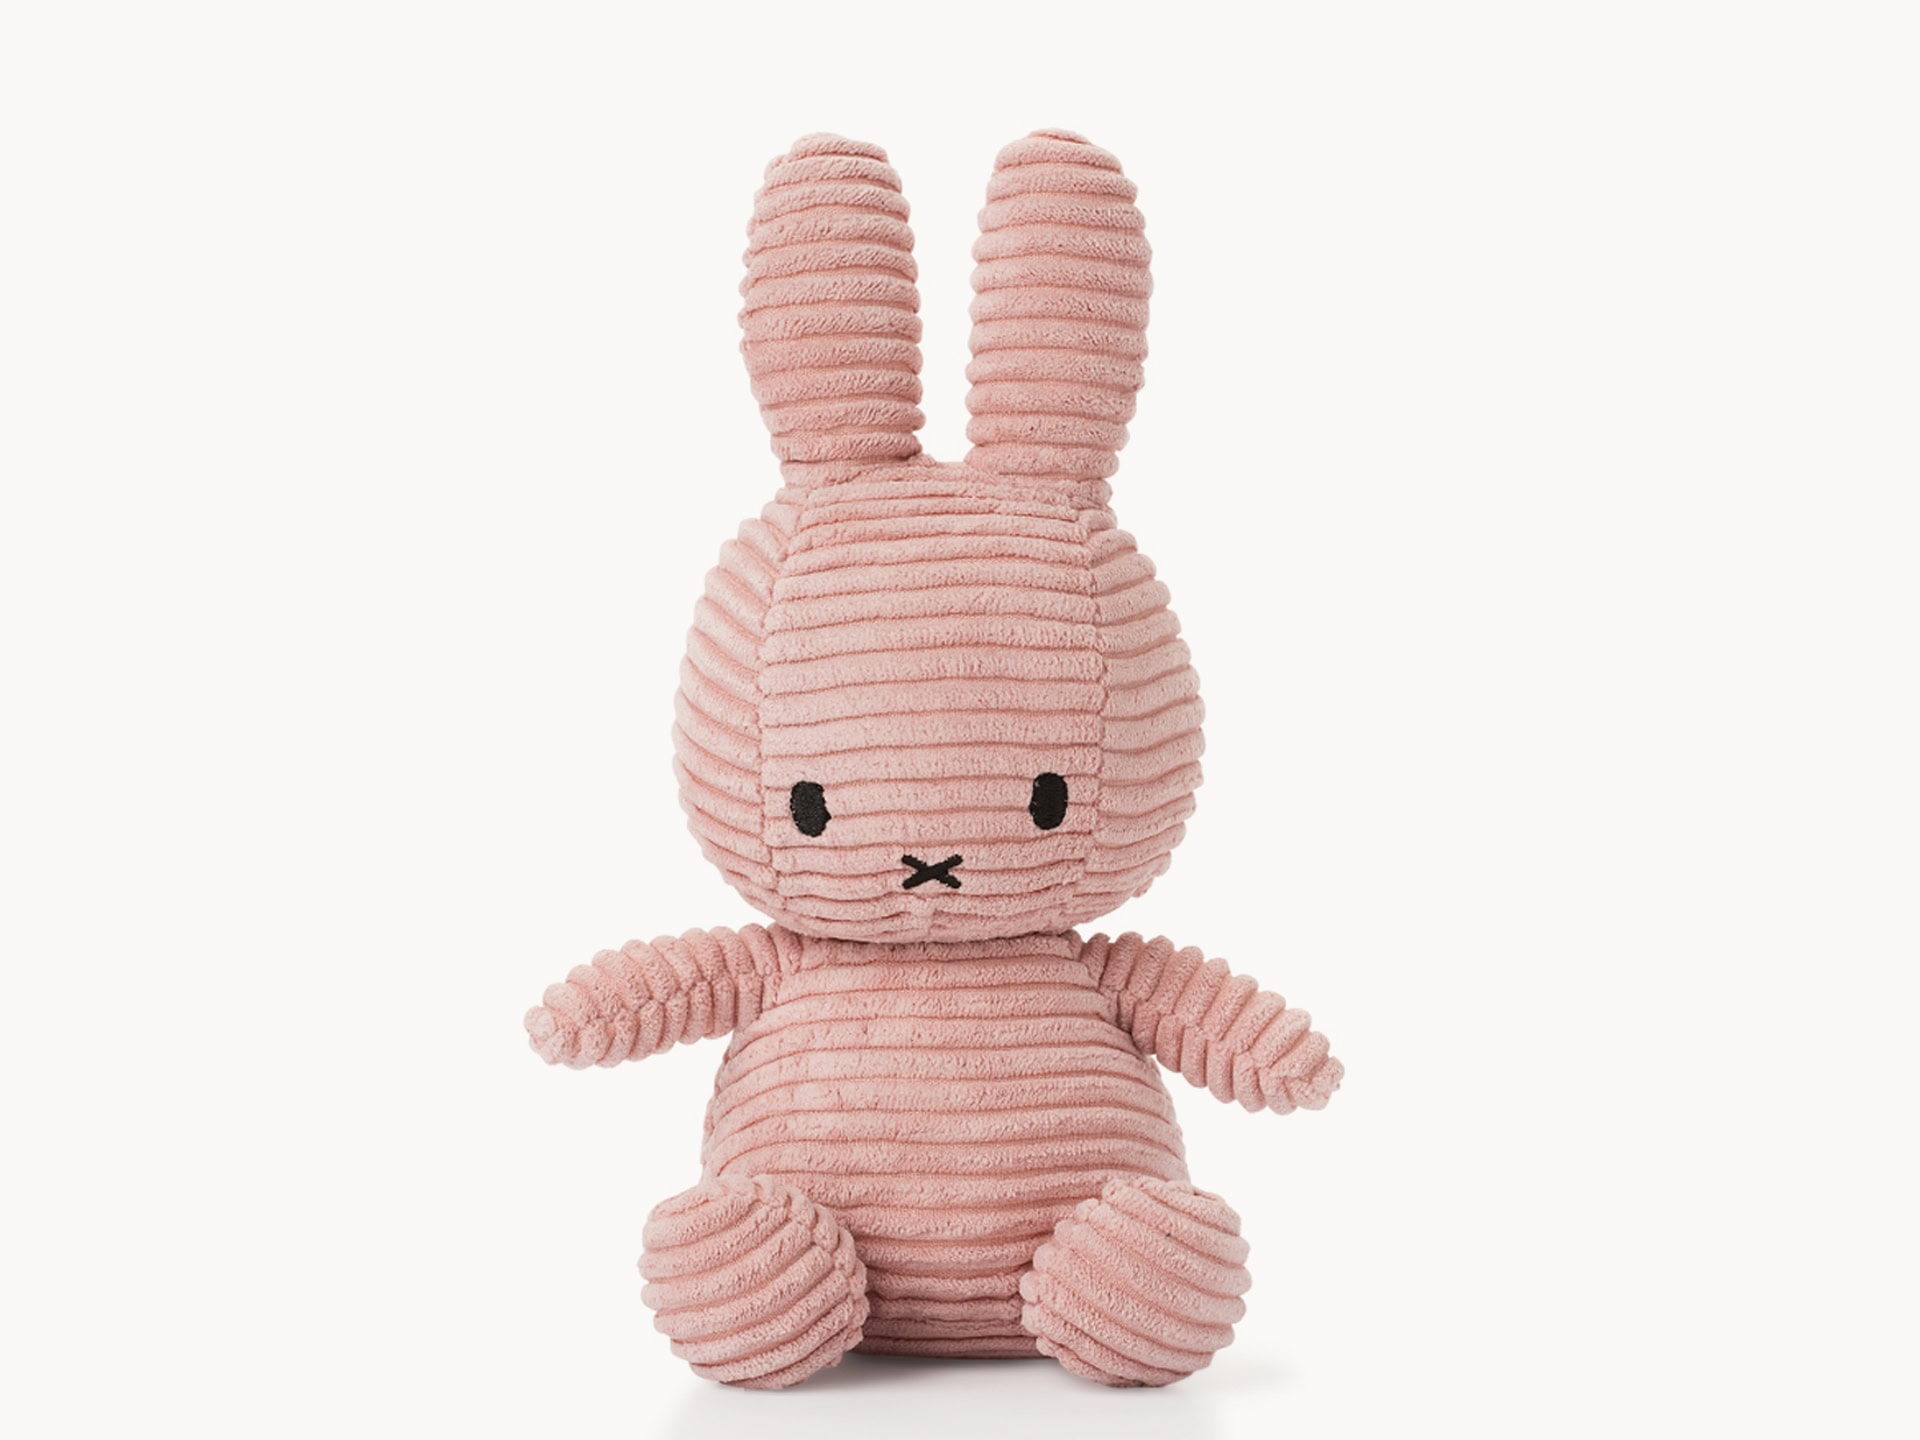 Kids’ stuffed bunny toy.